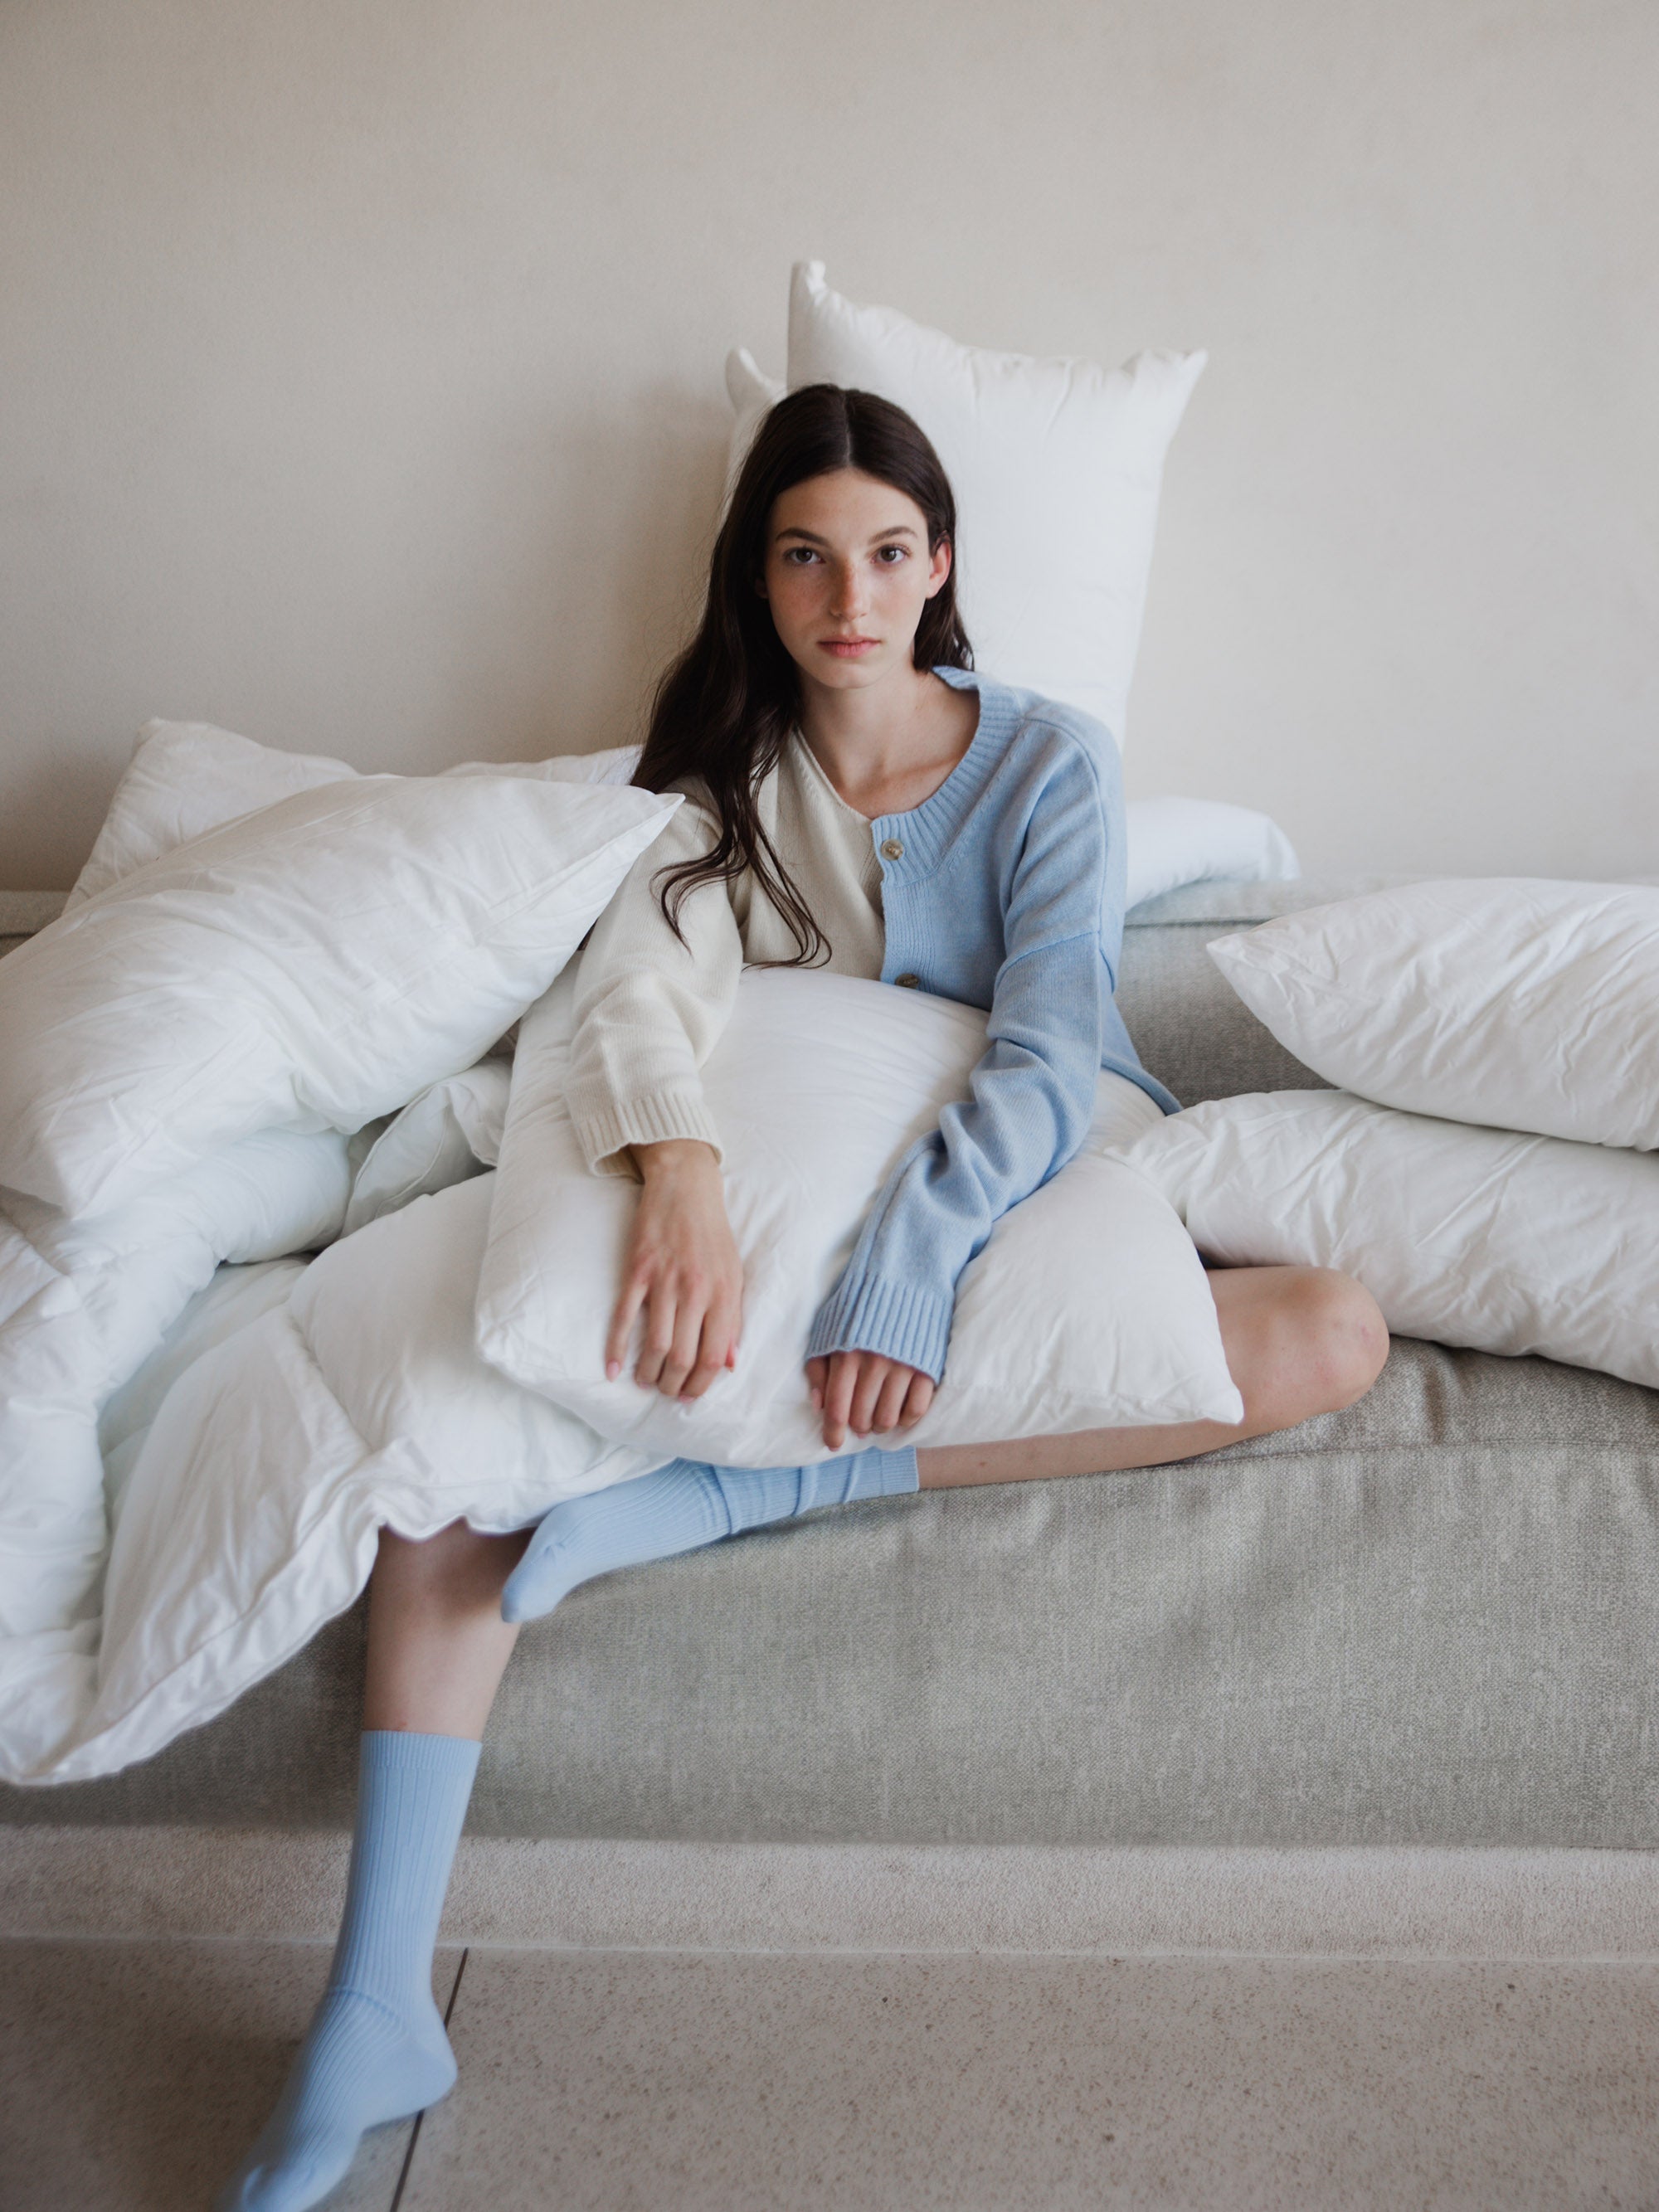 אישה על ספה מחזיקה כרית שינה שמסביבה מונחות עוד כריות למיטה 